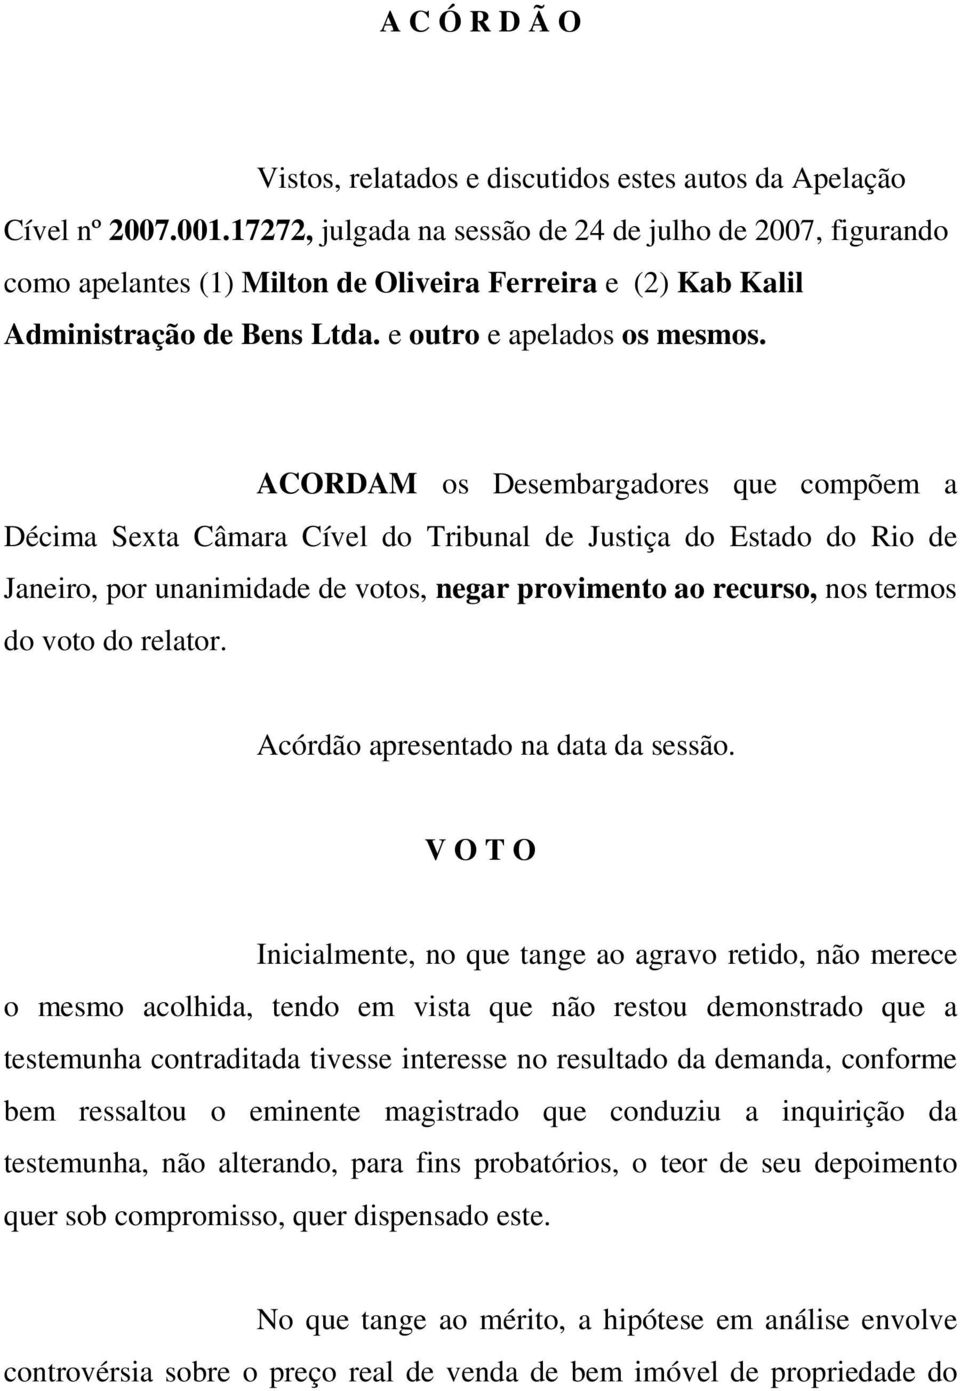 ACORDAM os Desembargadores que compõem a Décima Sexta Câmara Cível do Tribunal de Justiça do Estado do Rio de Janeiro, por unanimidade de votos, negar provimento ao recurso, nos termos do voto do